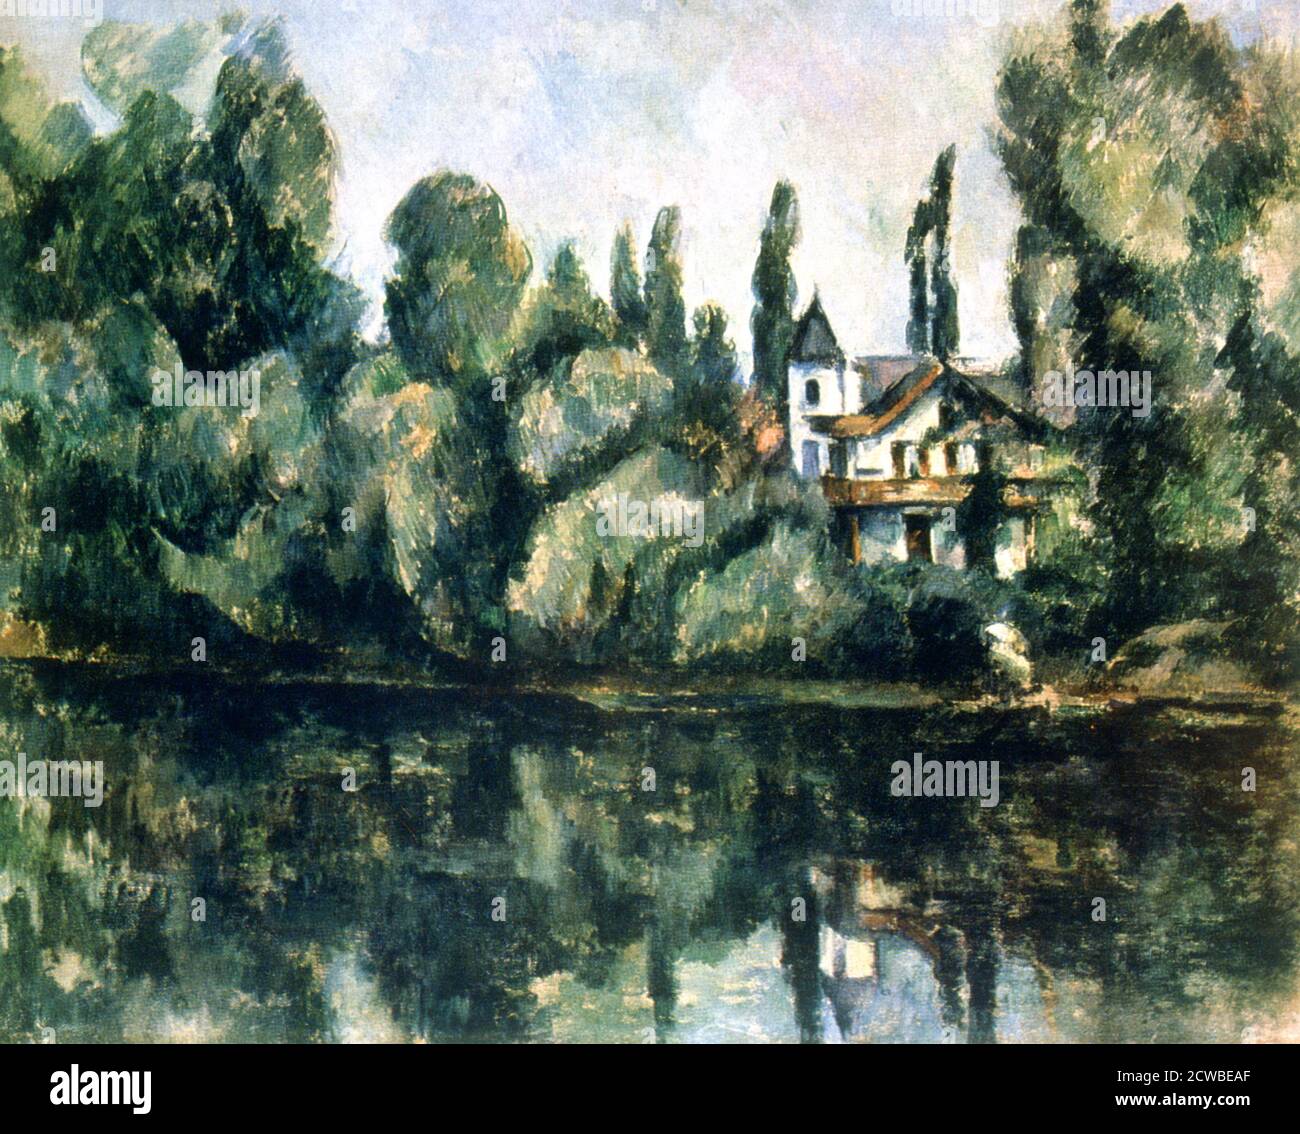 Die Ufer der Marne, Villa am Ufer eines Flusses', c1888. Künstler: Paul Cezanne. Cezanne (1839-1906) war ein französischer Künstler und Post-Impressionist Maler, dessen Arbeit legte den Grundstein für den Übergang von der 19. Jahrhundert impressionistischen Bewegung zu 20. Jahrhundert Stile wie Kubismus. Stockfoto